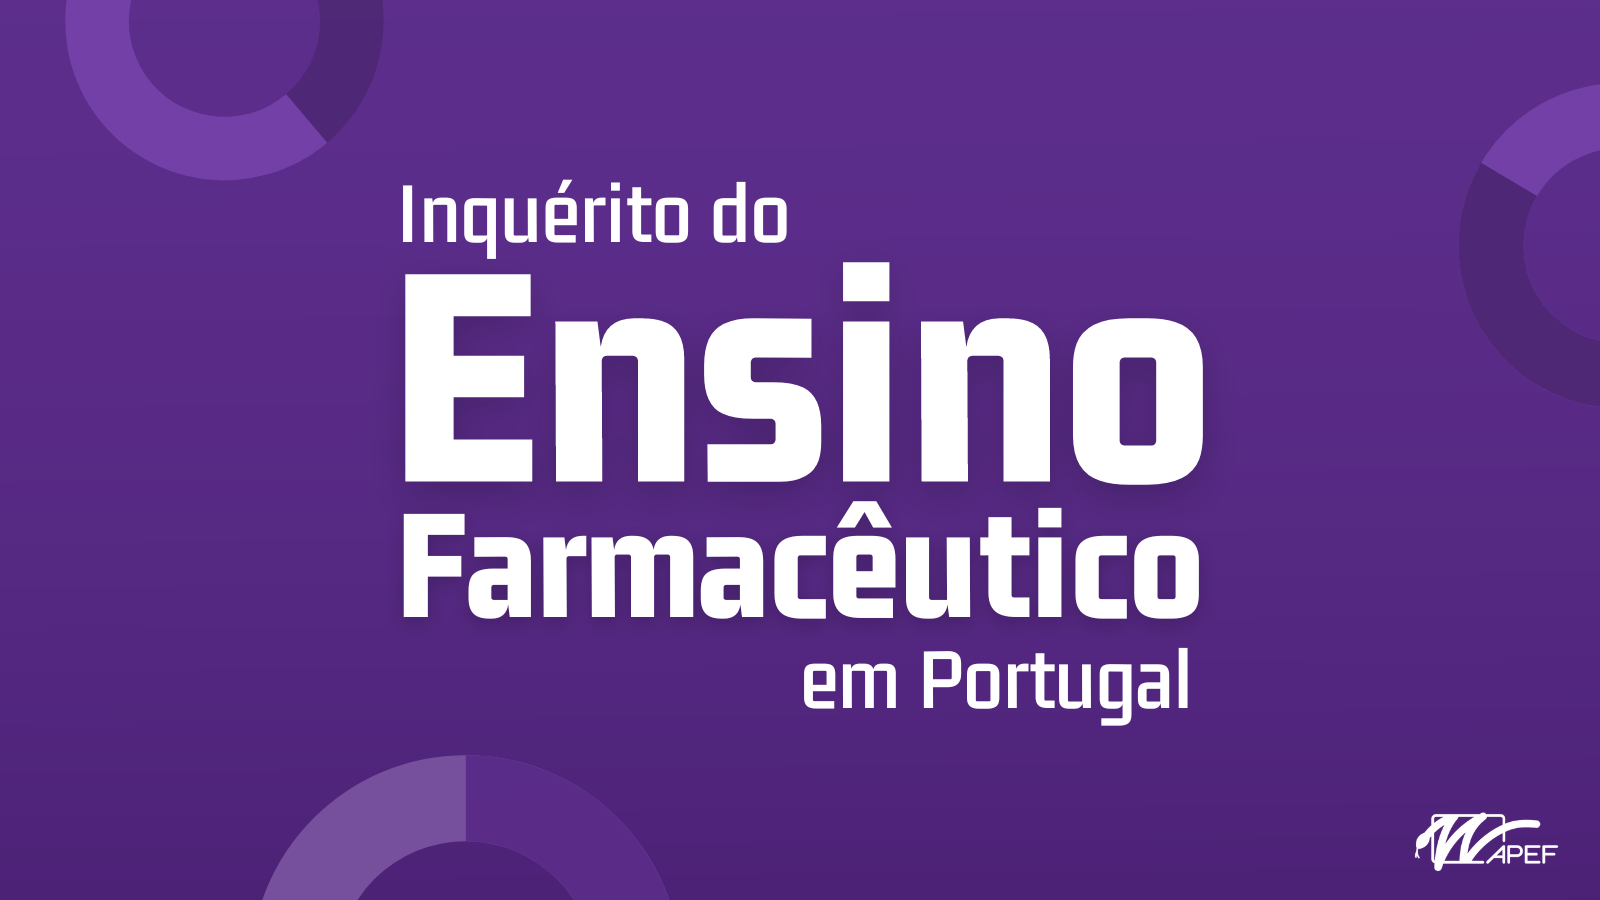 Inquérito do Ensino Farmacêutico em Portugal